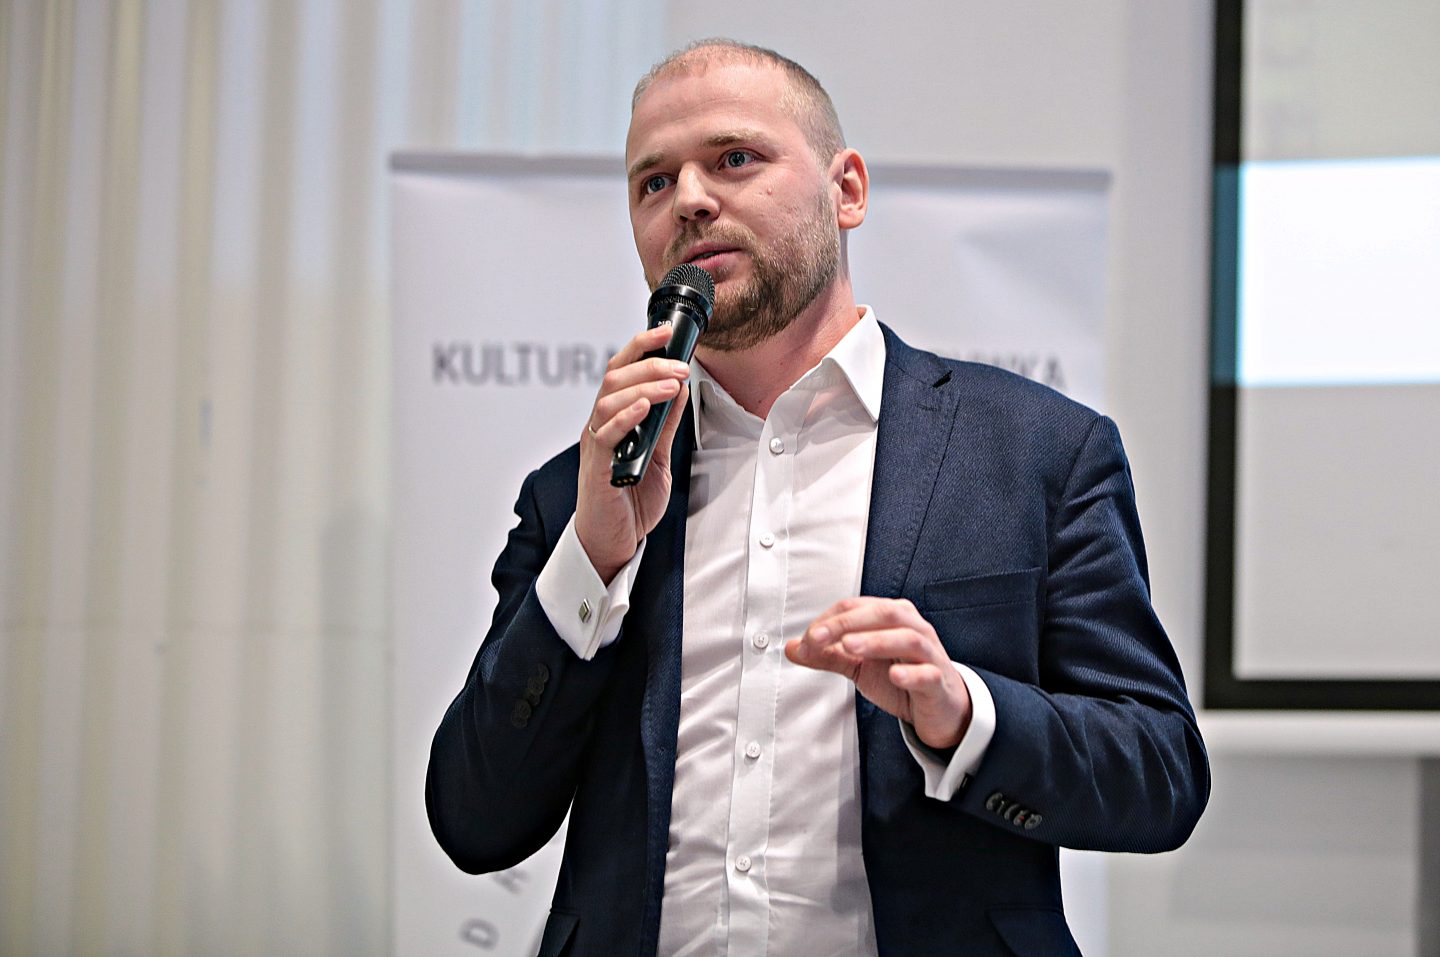 Informacja w związku ze startem Krzysztofa Mazura w wyborach parlamentarnych